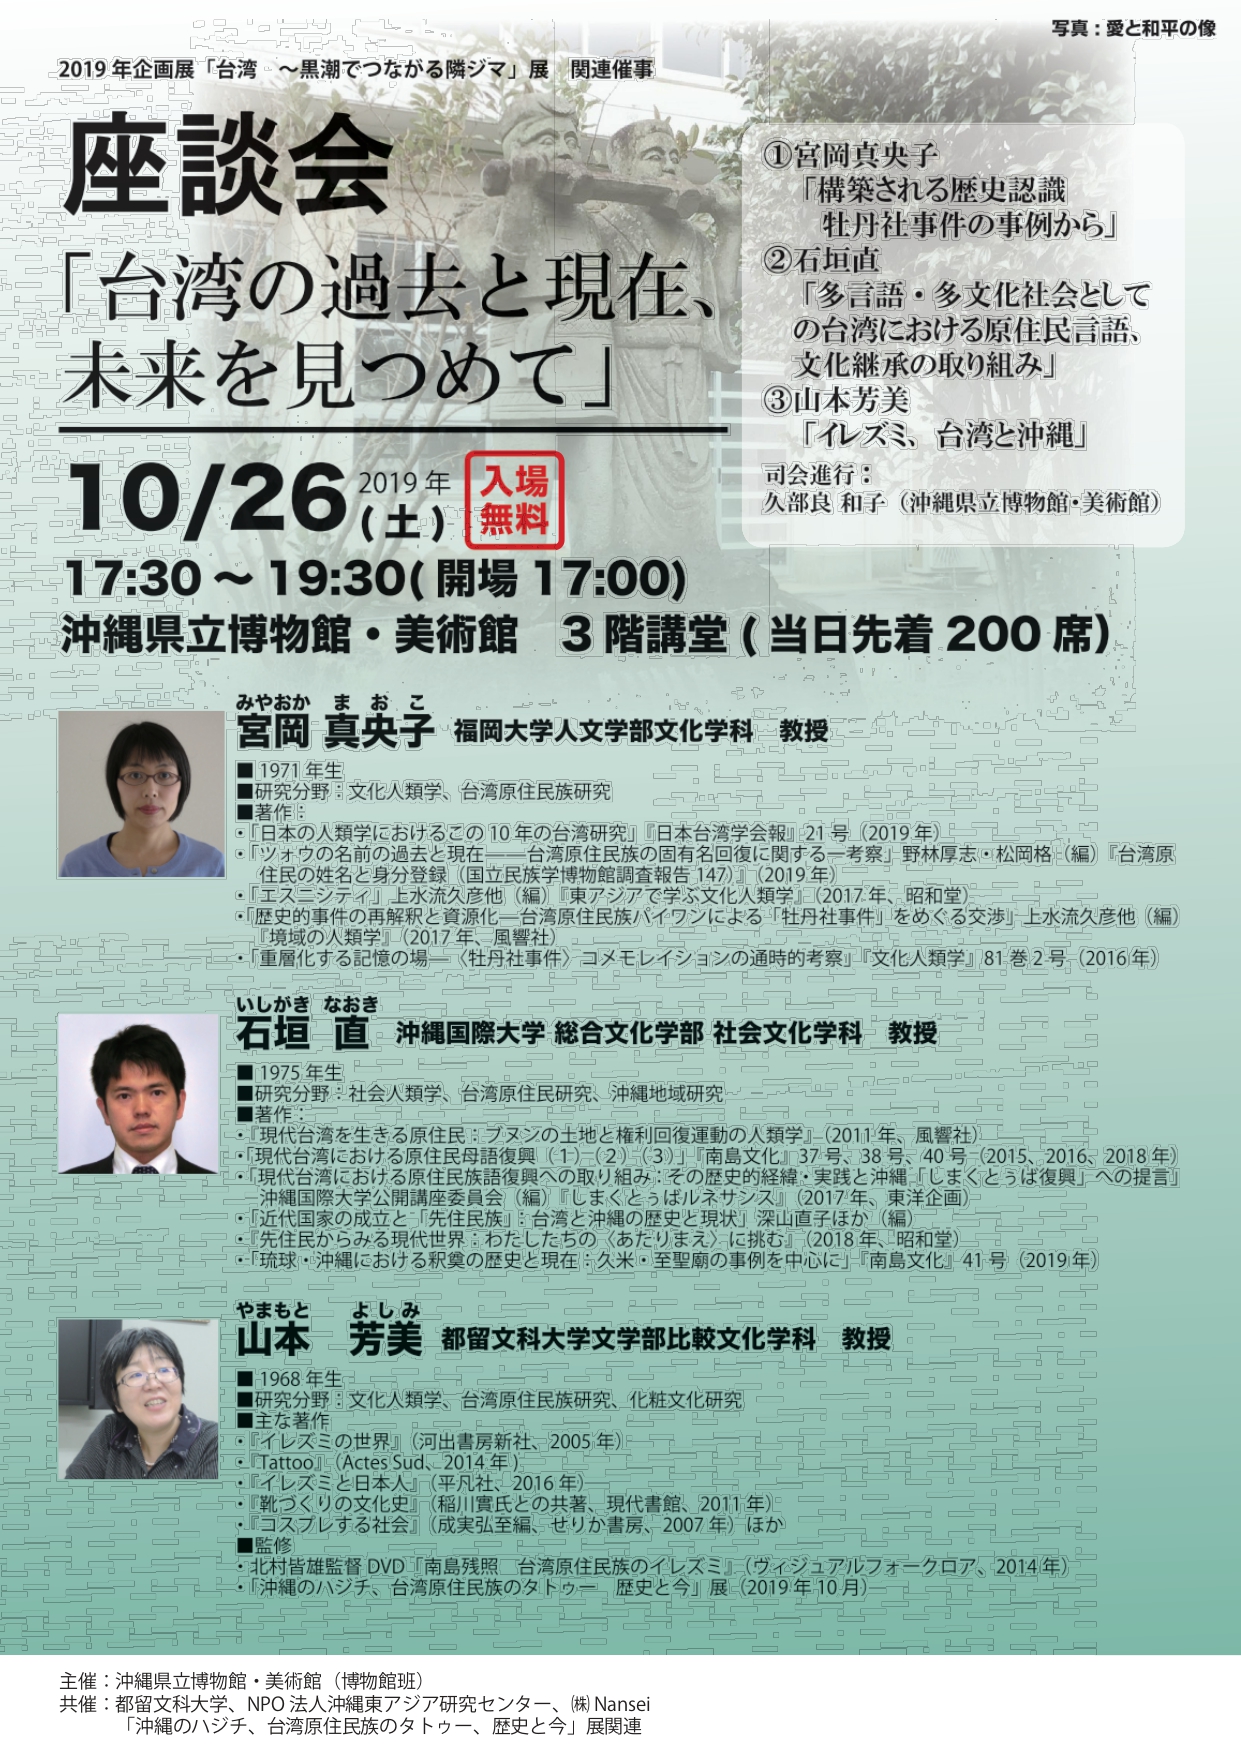 台湾展関連催事　座談会「台湾の過去と現在、未来をみつめて」